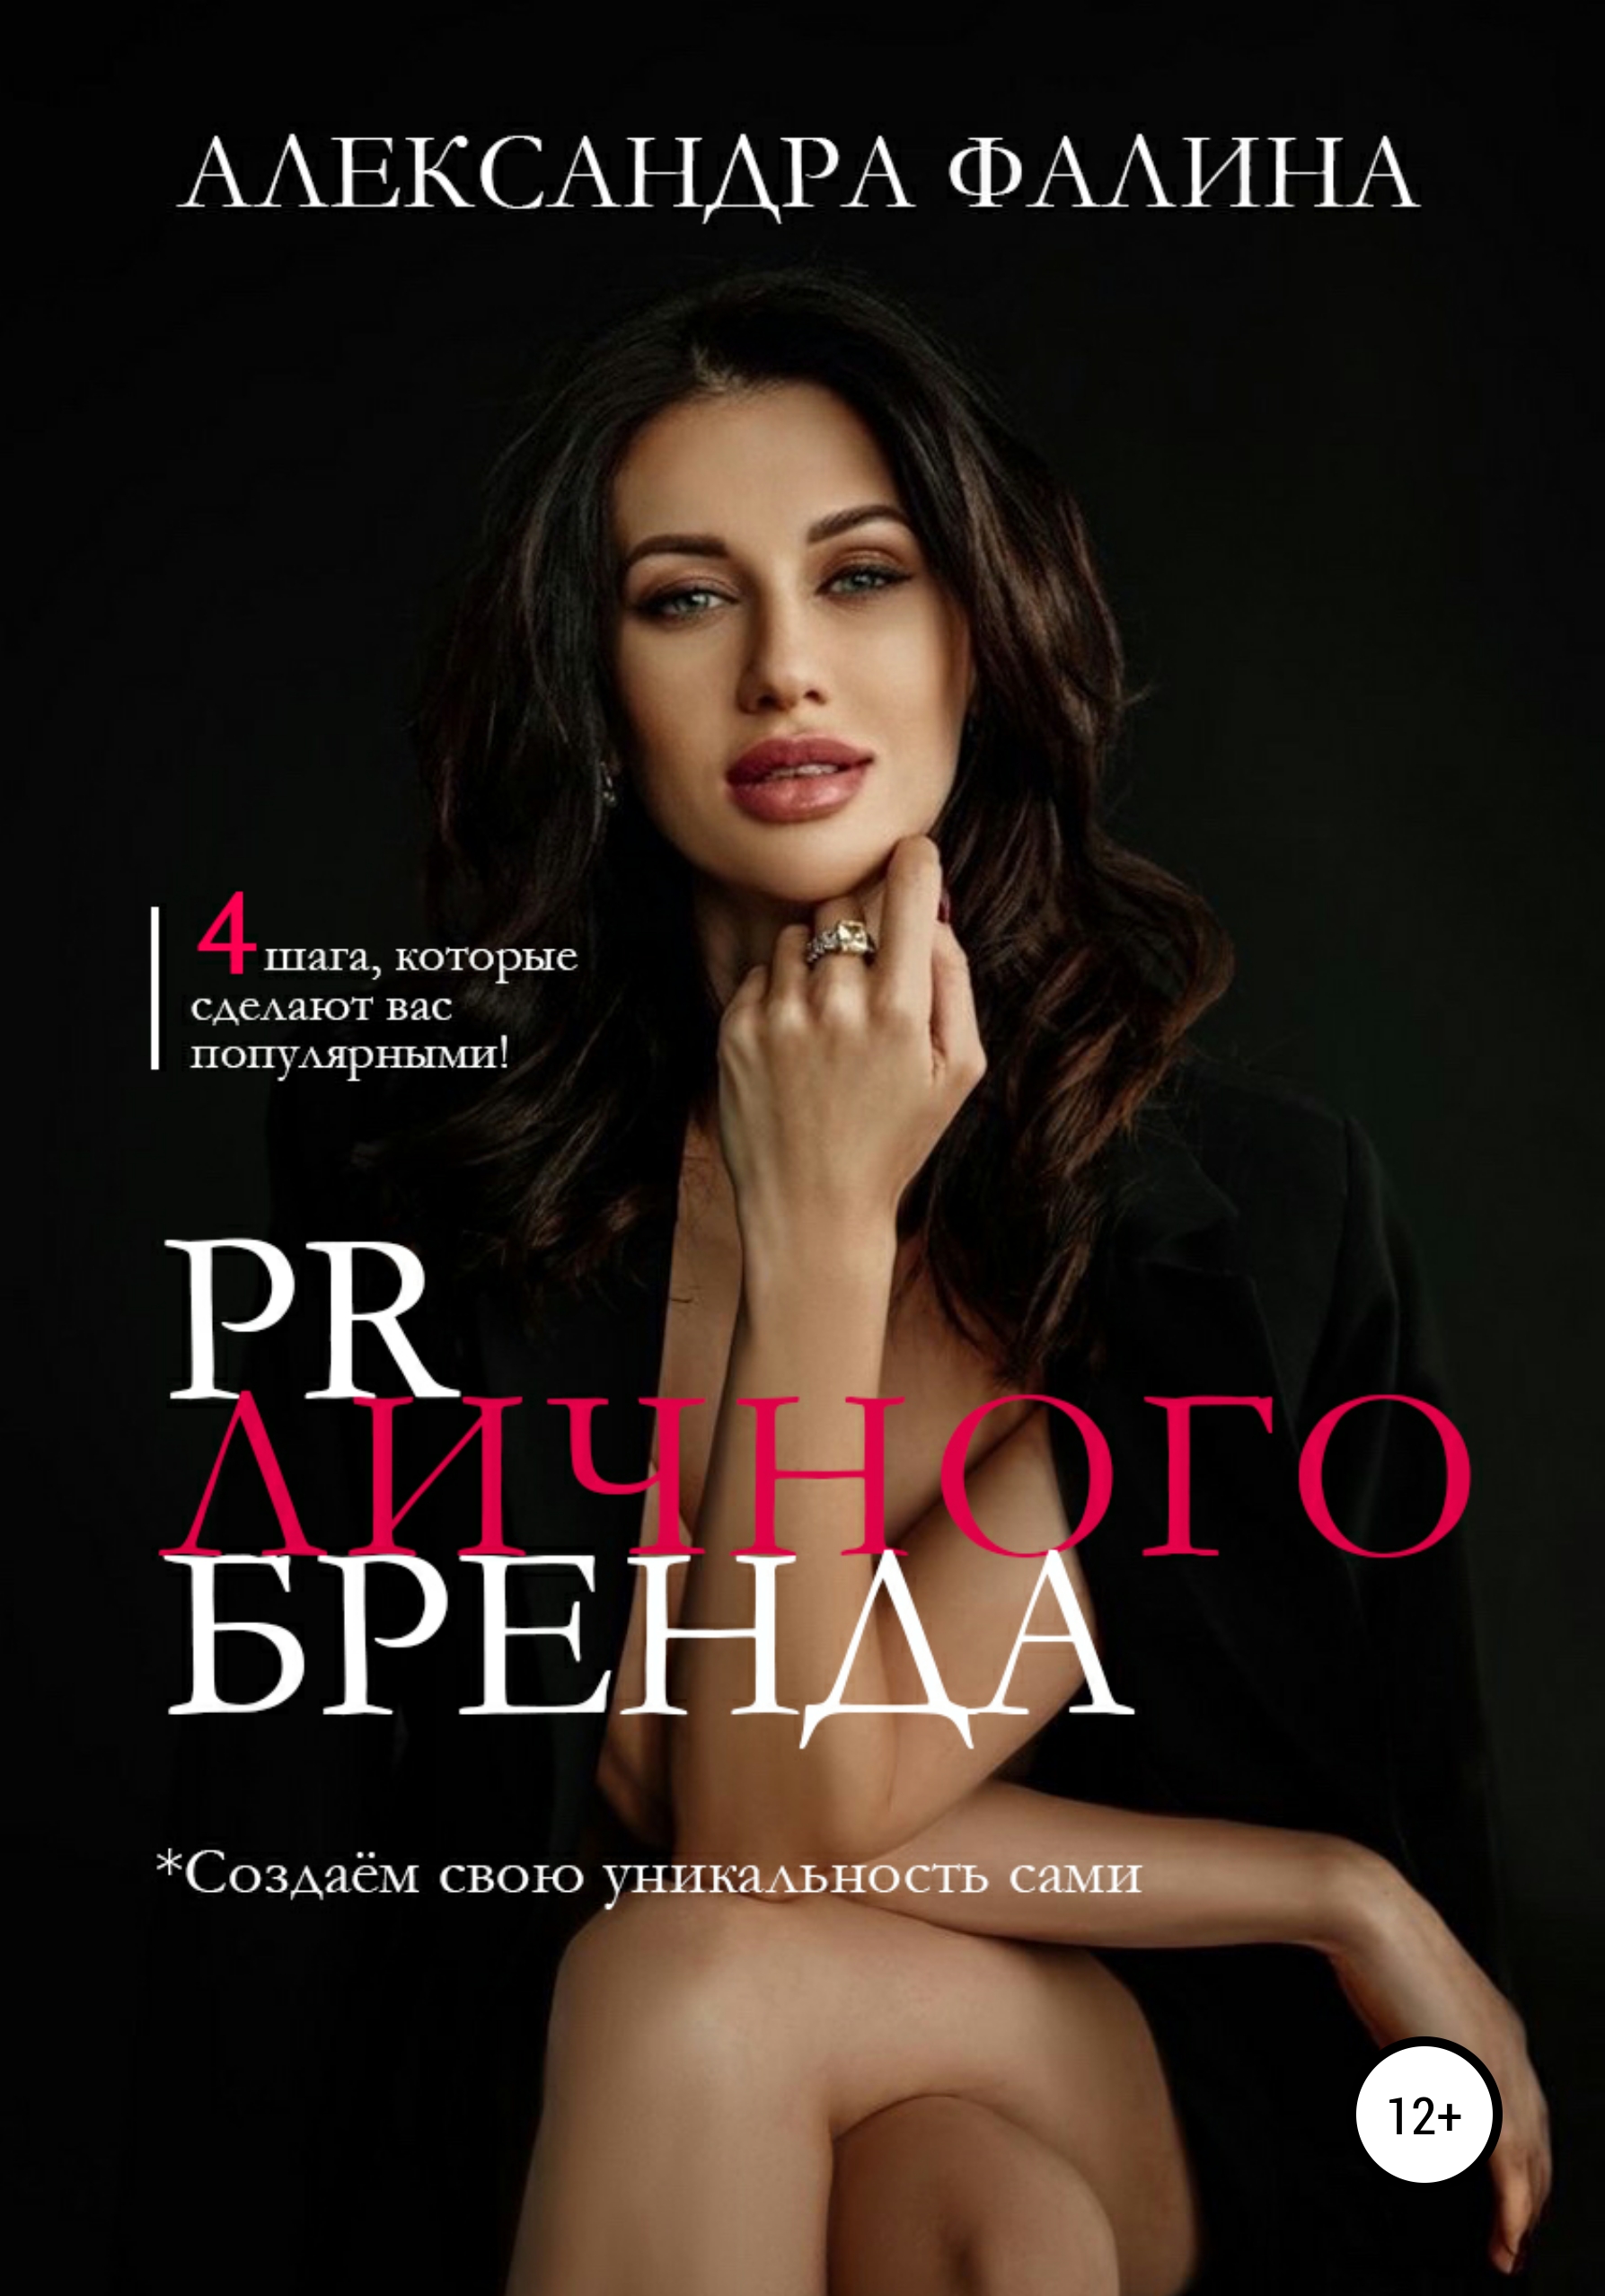 Книга  PR личного бренда созданная Александра Фалина может относится к жанру PR, брендинг, классический маркетинг. Стоимость электронной книги PR личного бренда с идентификатором 66840388 составляет 249.00 руб.